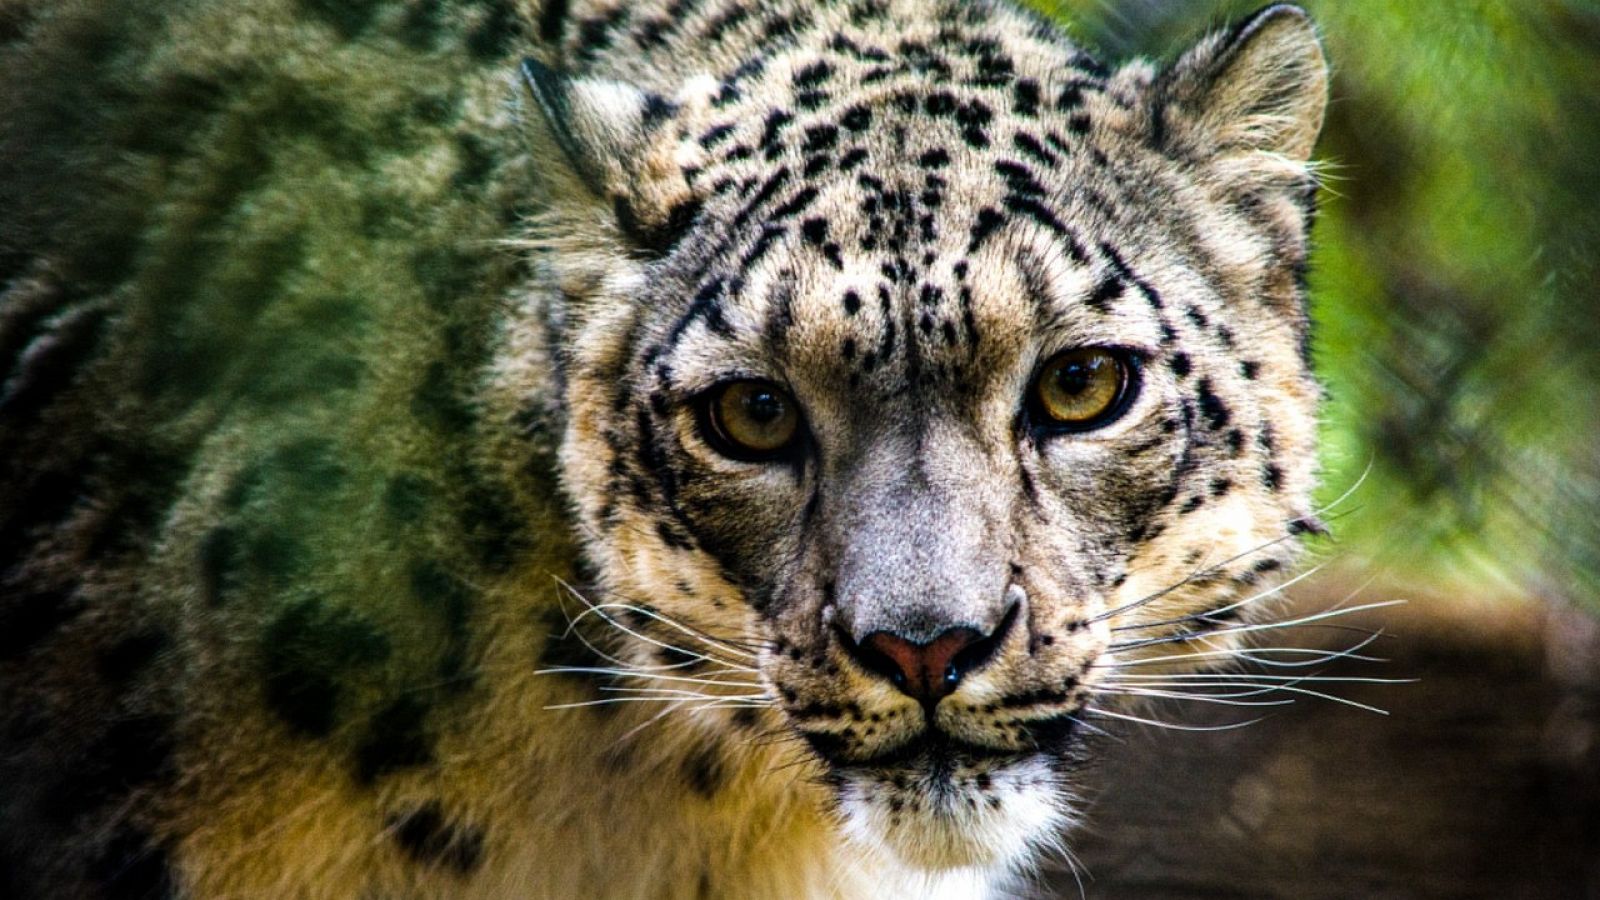 Fotografía cedida por el zoológico de Louisville en Kentucky donde aparece NeeCee, la hembra de leopardo de las nieves que ha dado positivo por COVID-19, convirtiéndose en el primer ejemplar de esta especie en contagiarse con este virus.